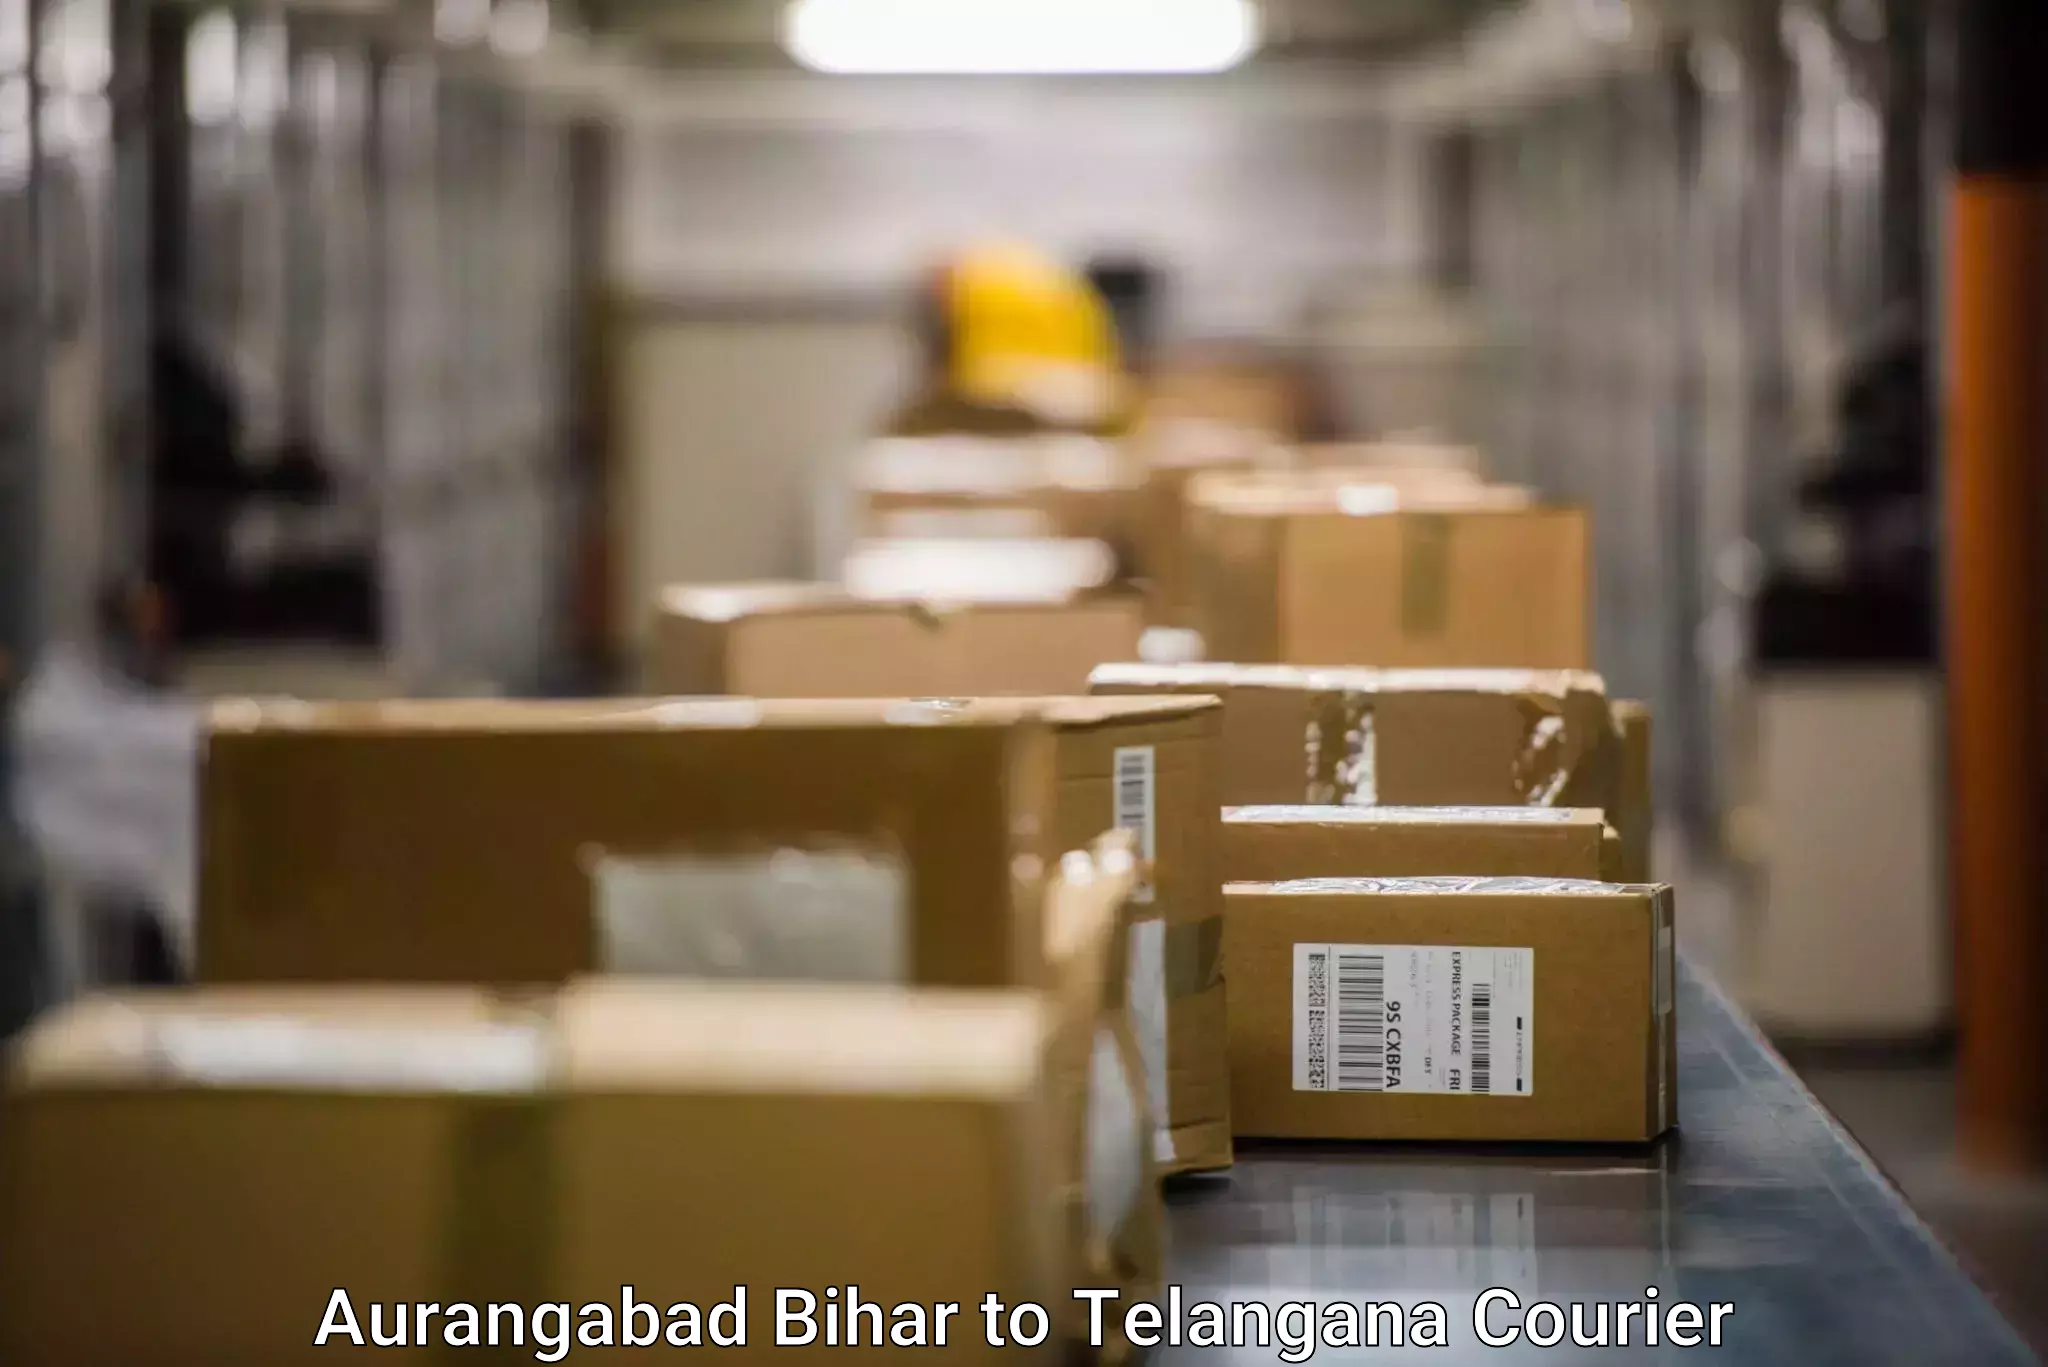 Multi-carrier shipping Aurangabad Bihar to Tadvai